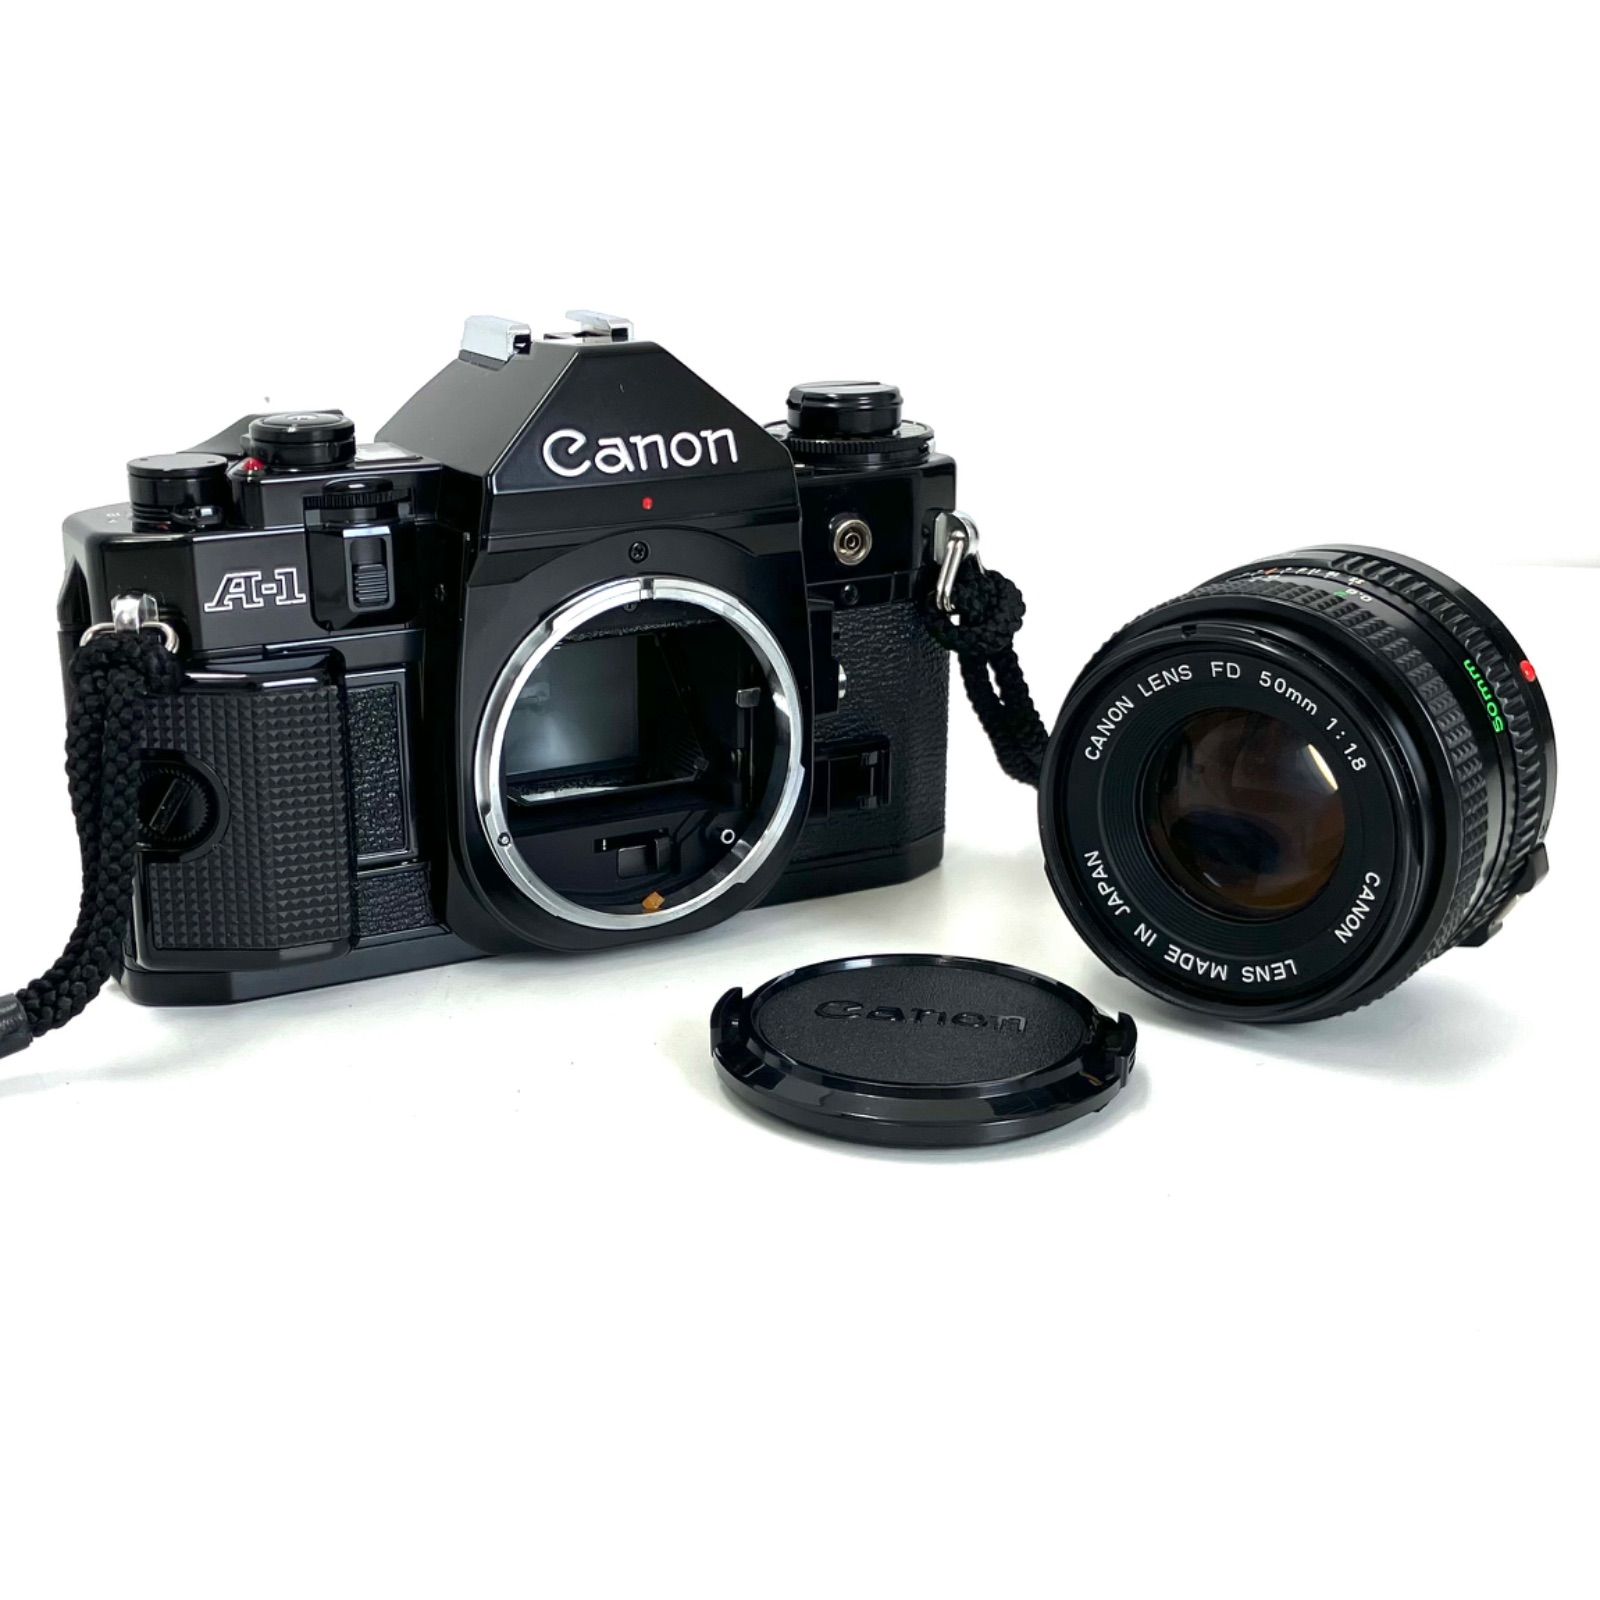 カメラ本体 Canon A-1 レンズ FD 50mm f1.8 本体レンズセット ...